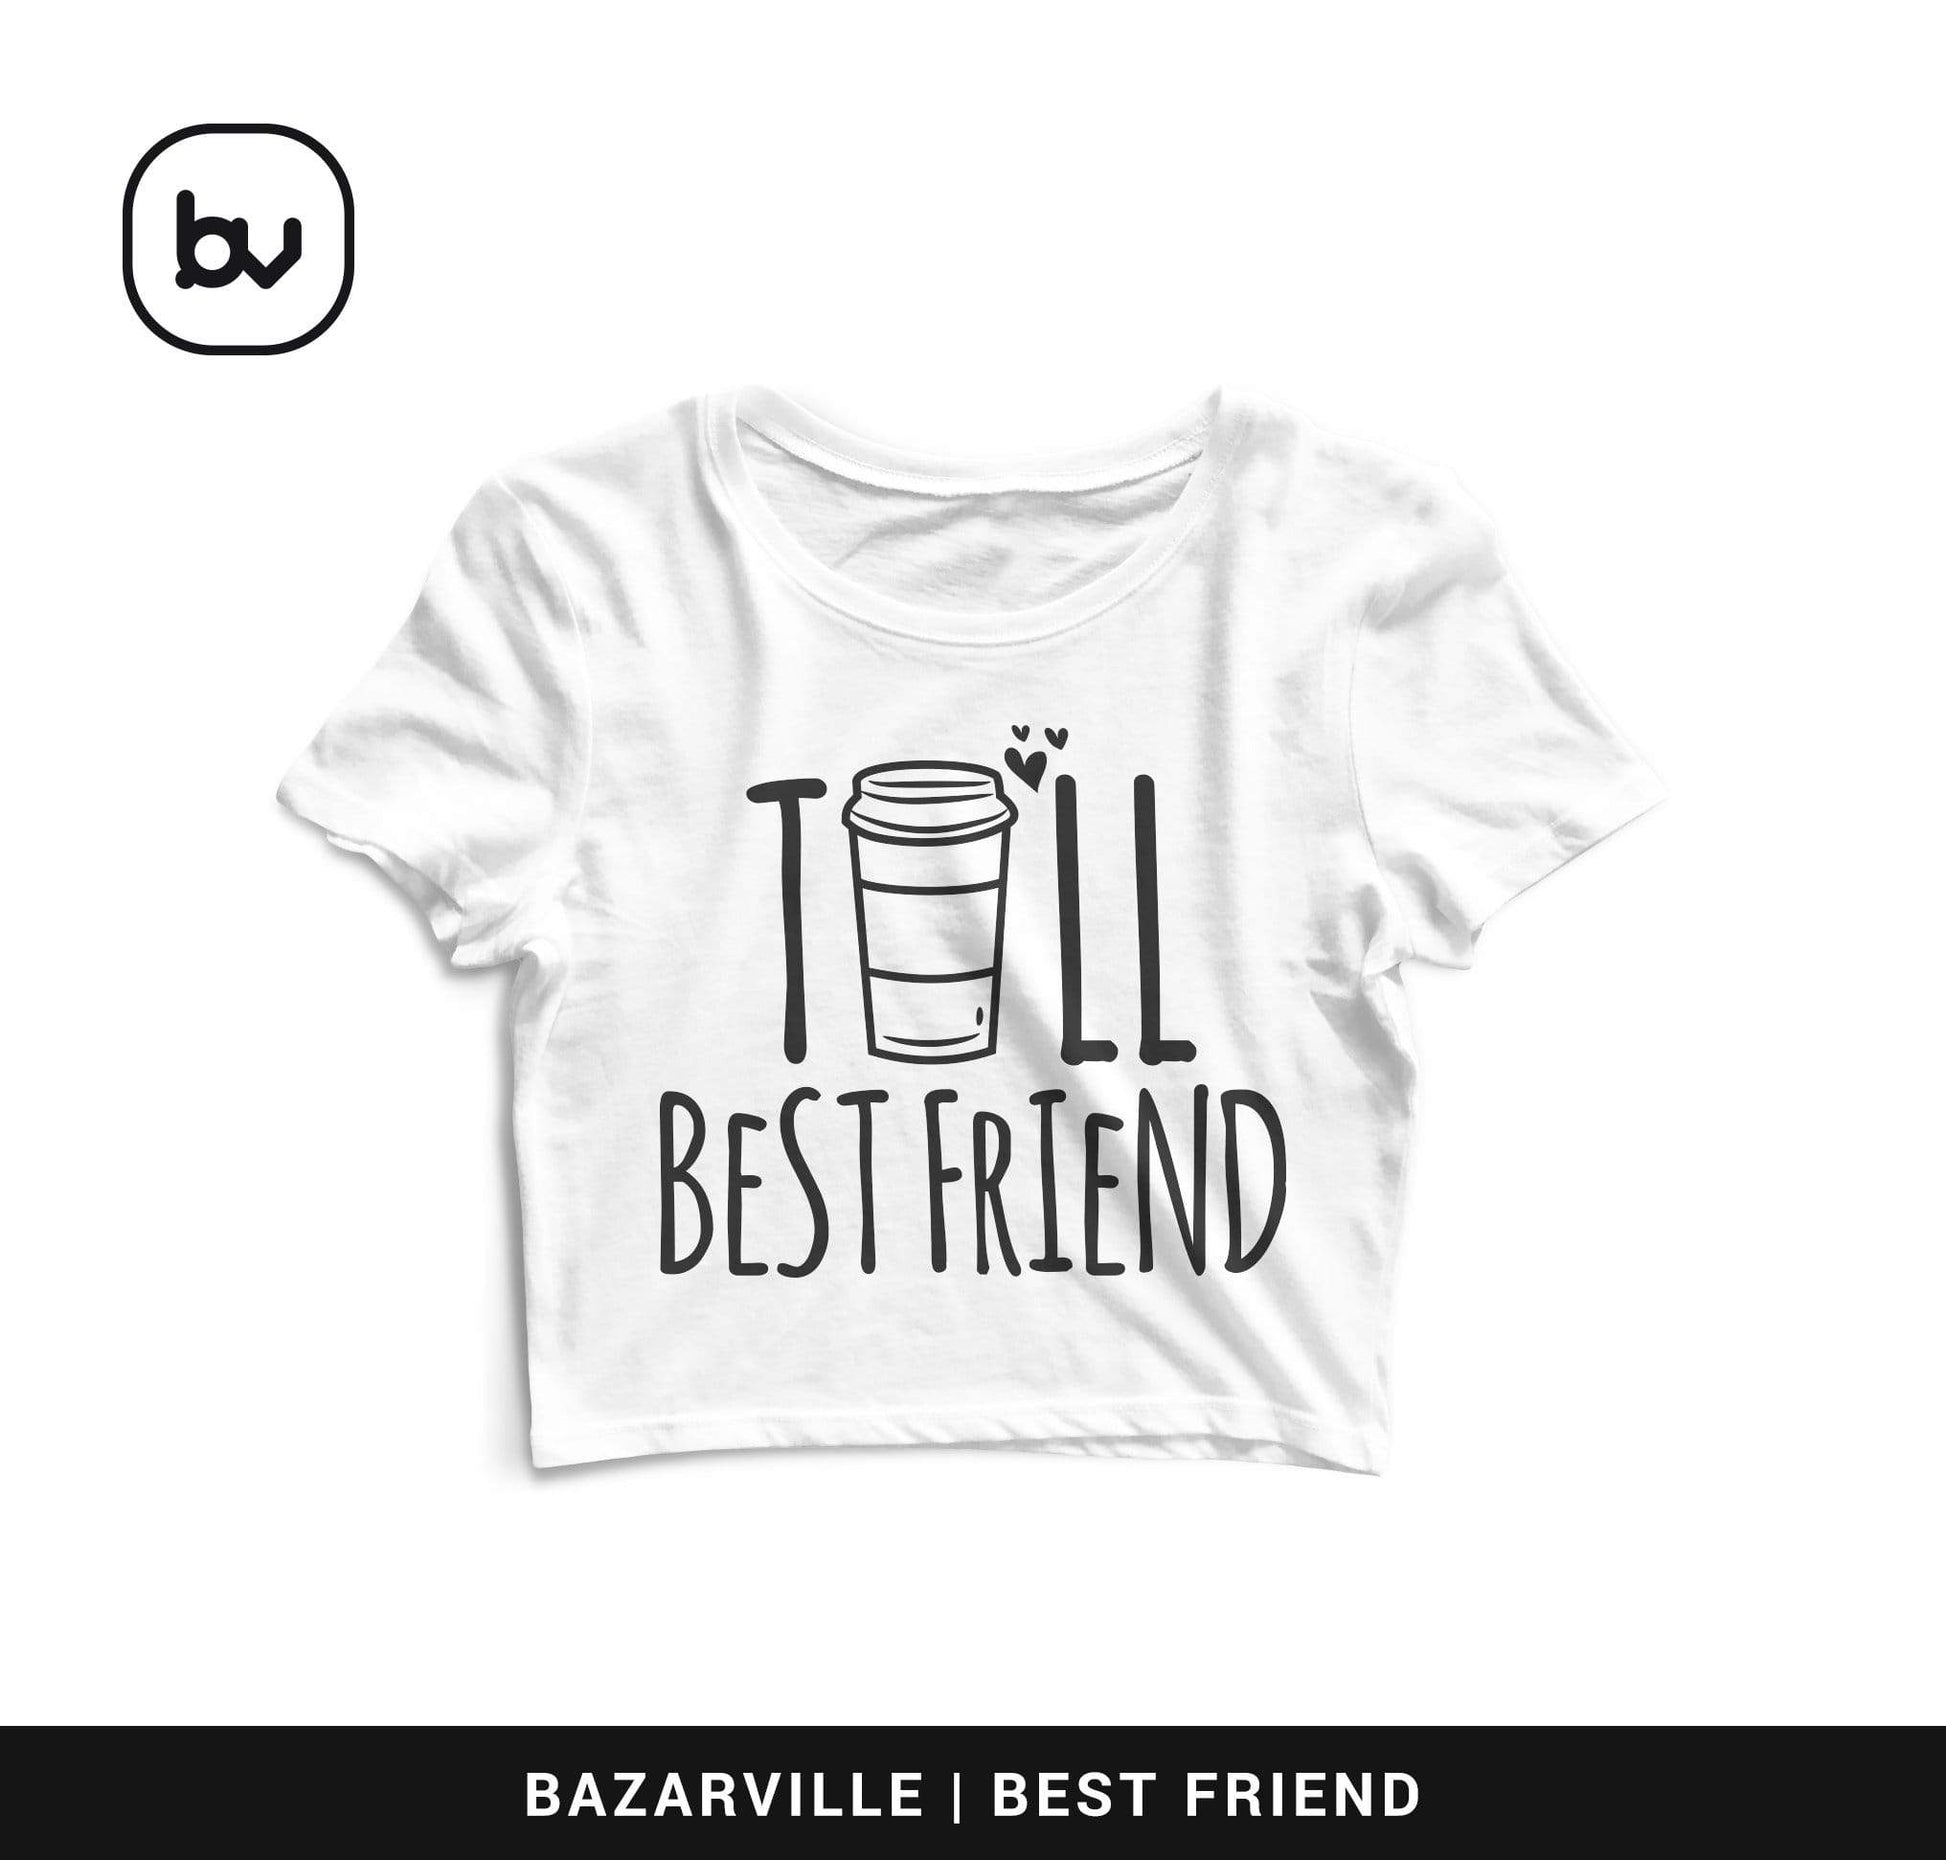 Bazarville Crop Design S / White Tall Friend